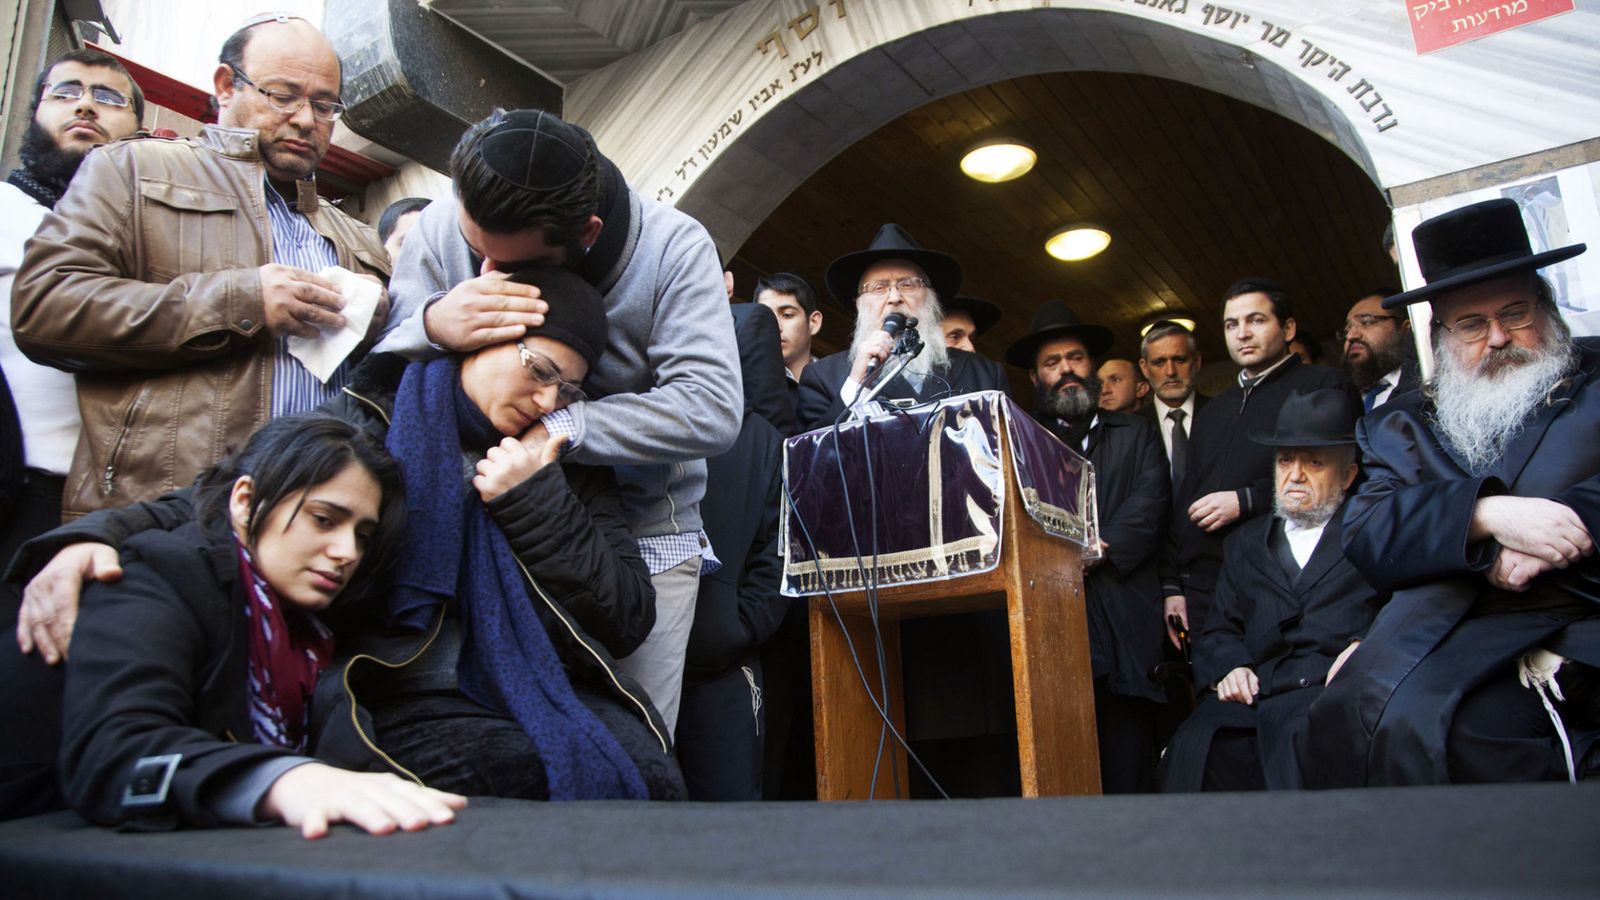 Foto: Familiares de Yoav Hattab, asesinado en un ataque en París, durante un funeral simbólico en Bnei Brak, cerca de Tel Aviv. (Reuters)